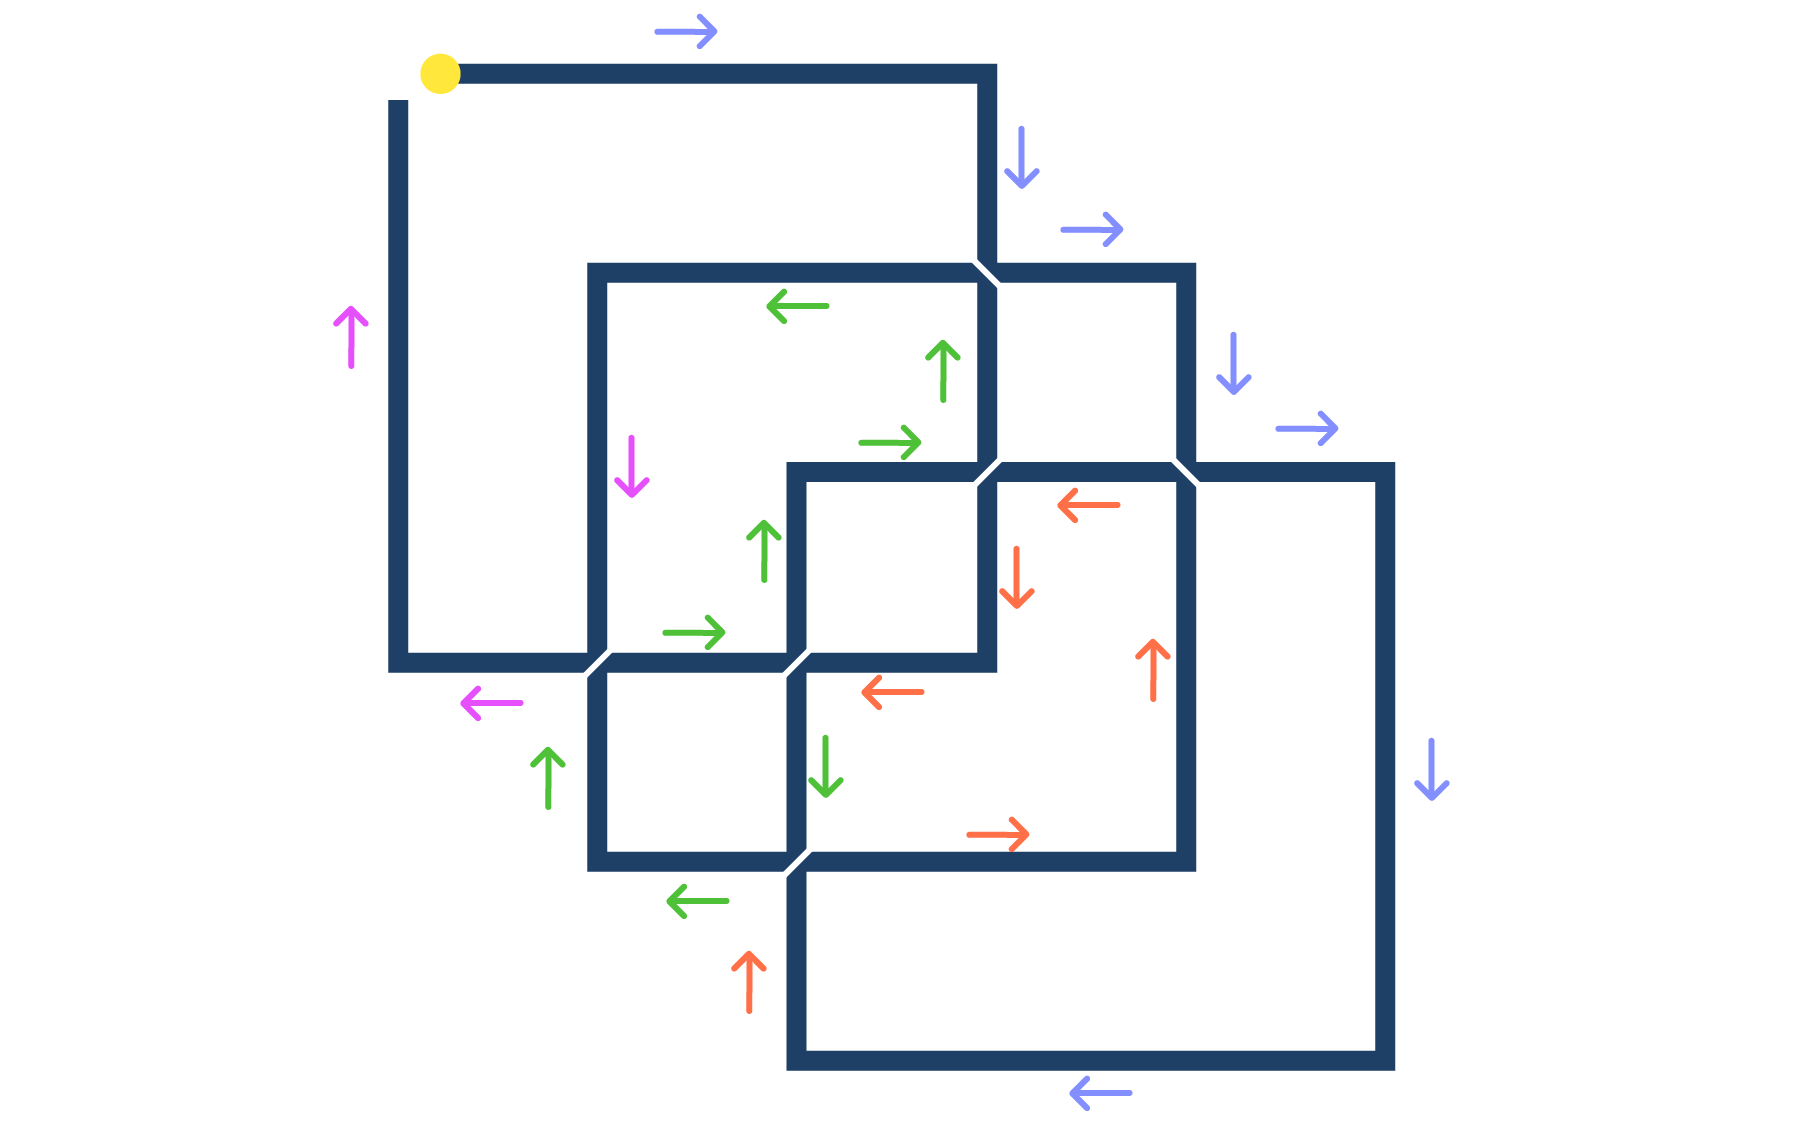 иллюстрация 1 варианта решения головоломки Льюиса Кэрролла с тремя квадратами